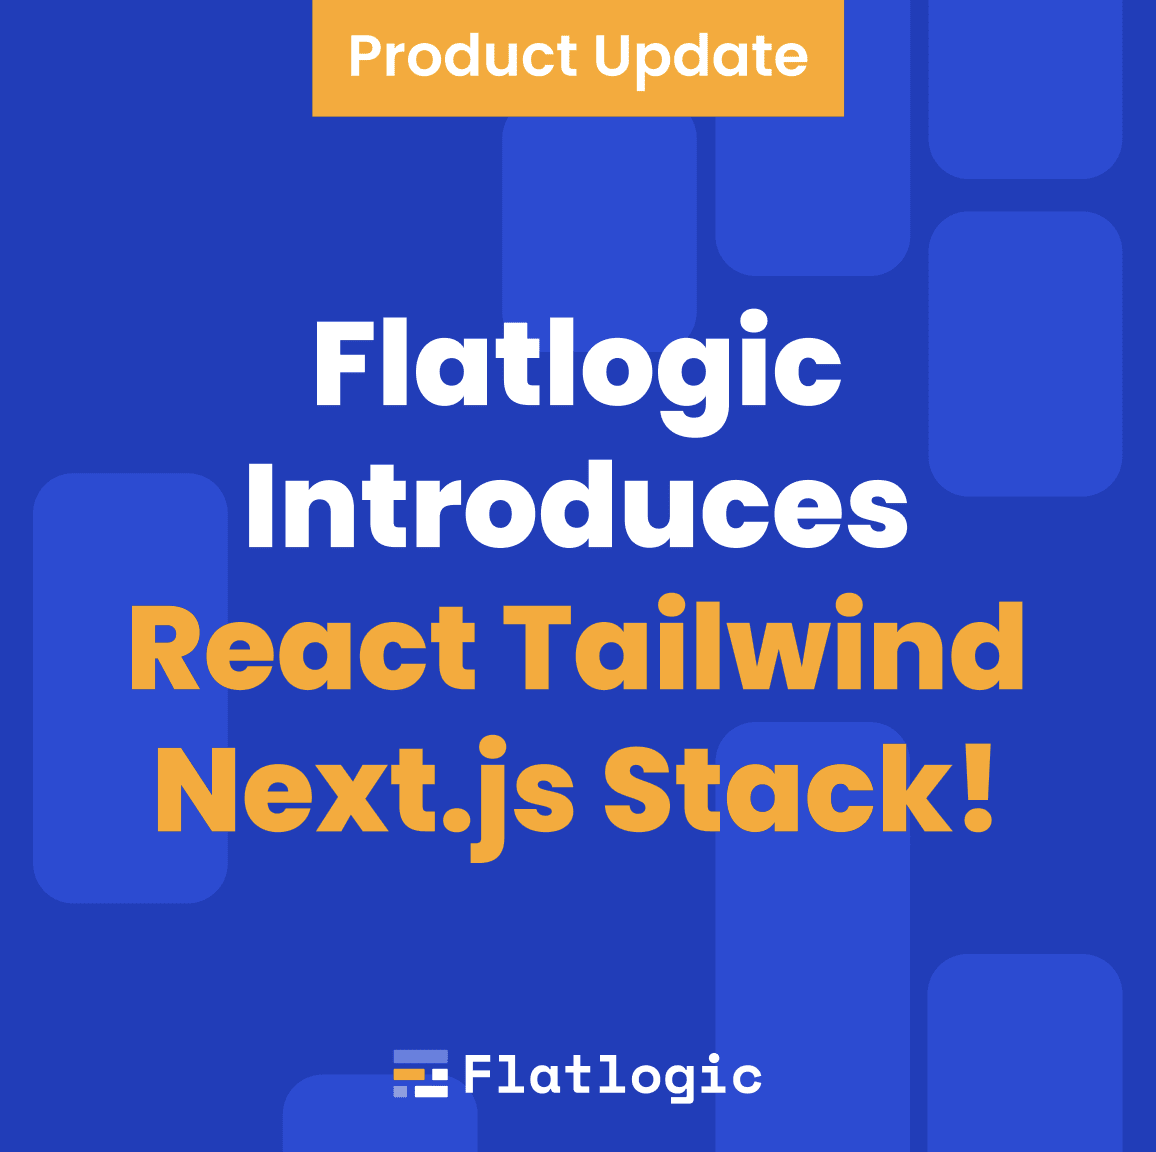 Flatlogic Introduces React Tailwind Next.js Stack!